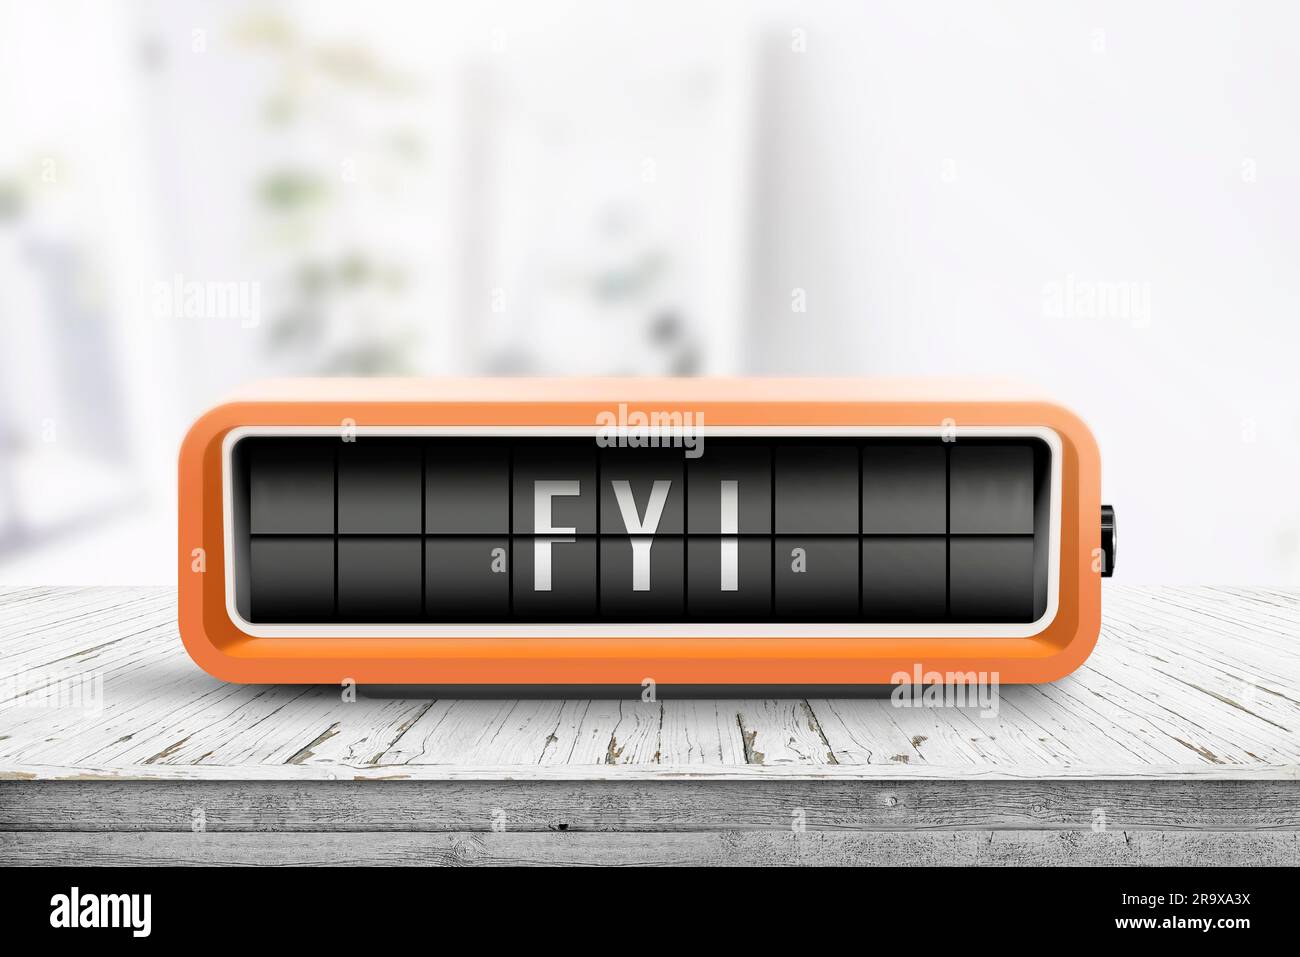 FYI messaggio su un allarme arancione orologio analogico con sistema di ribaltamento su una tavola di legno in una sala luminosa Foto Stock